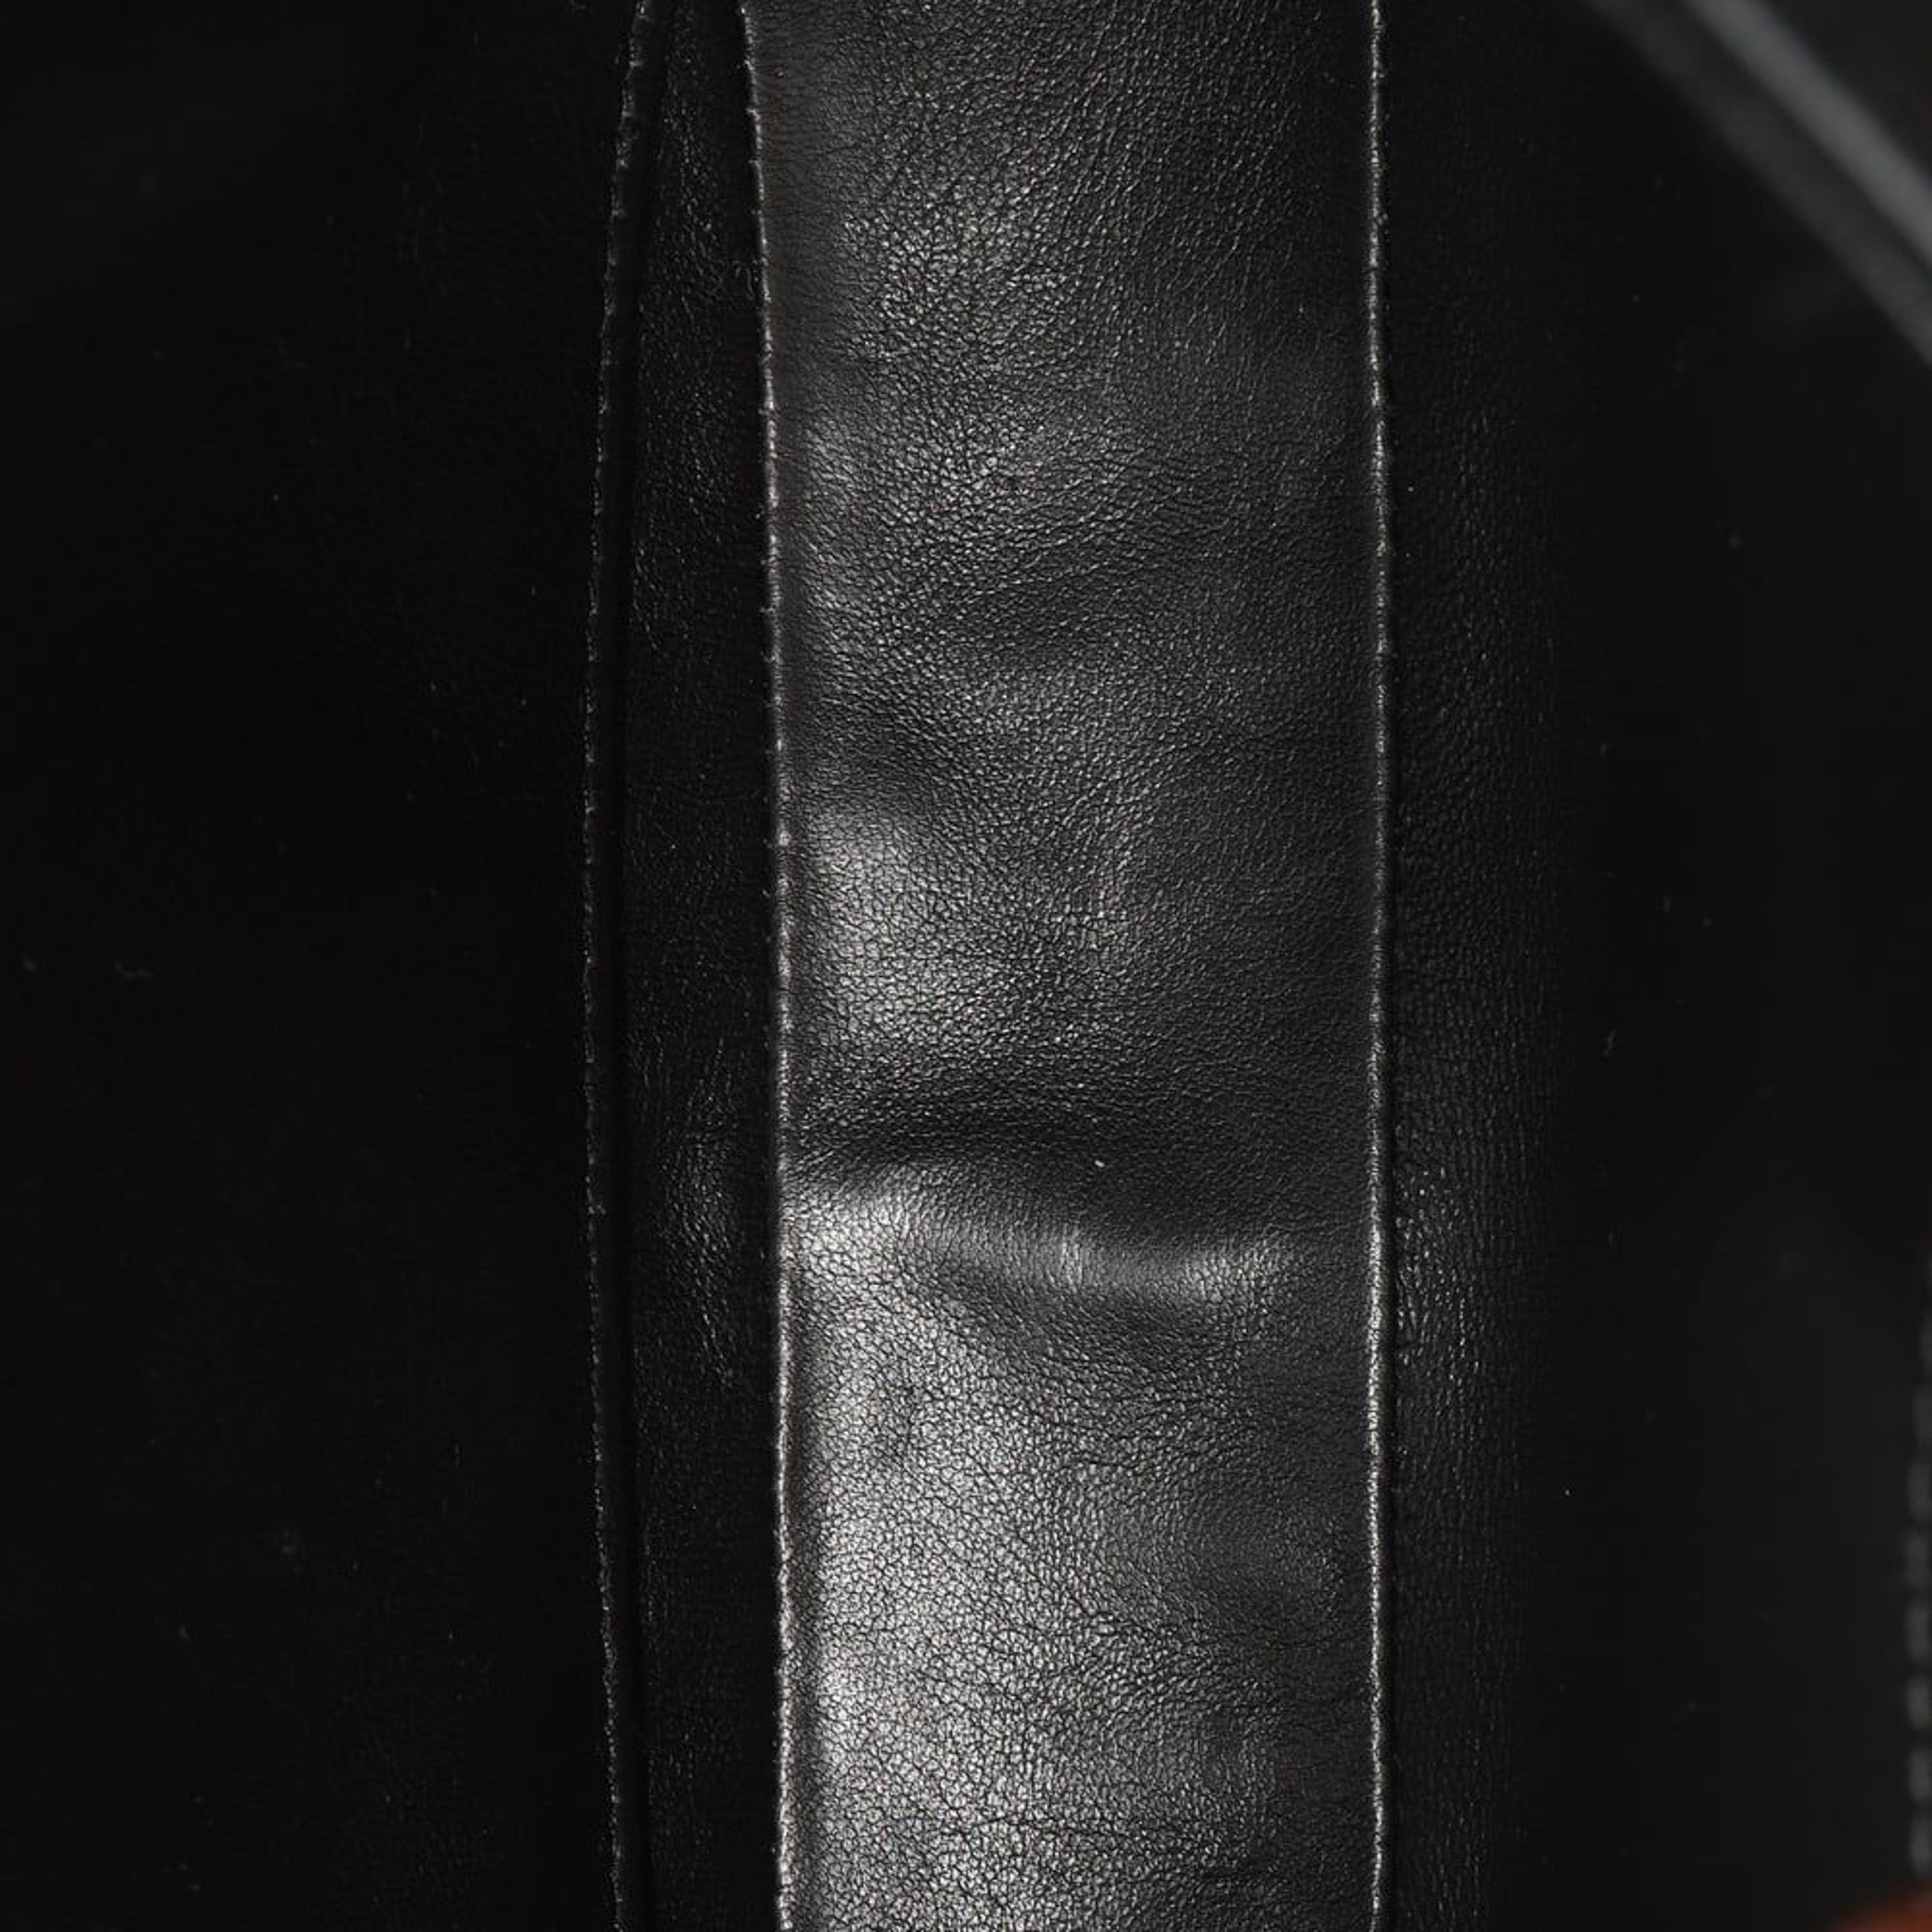 PRADA Prada Cleo Shoulder Bag in Black Brushed Leather - Vault 55